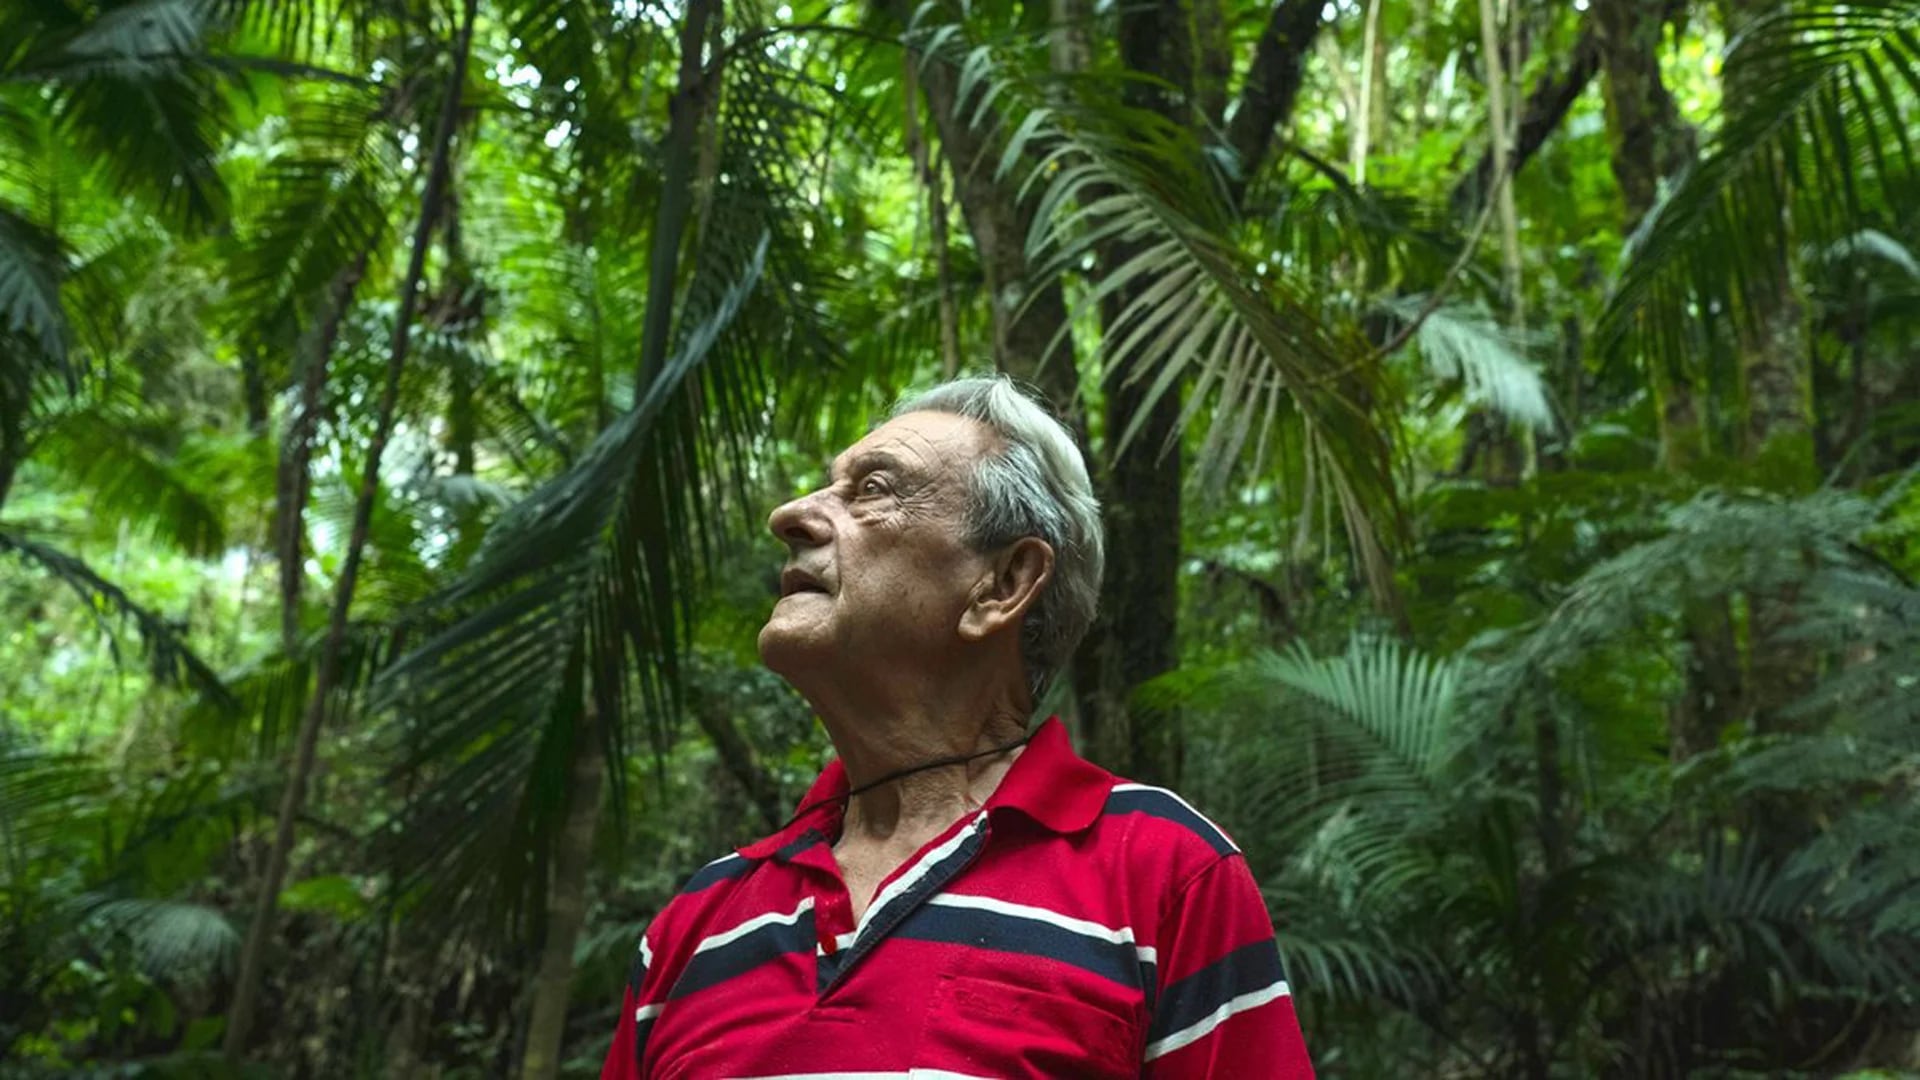 Antonio Vicente compró el terreno en 1973 para recuperar la vegetación perdida (Tommaso Protti/The Guardian)